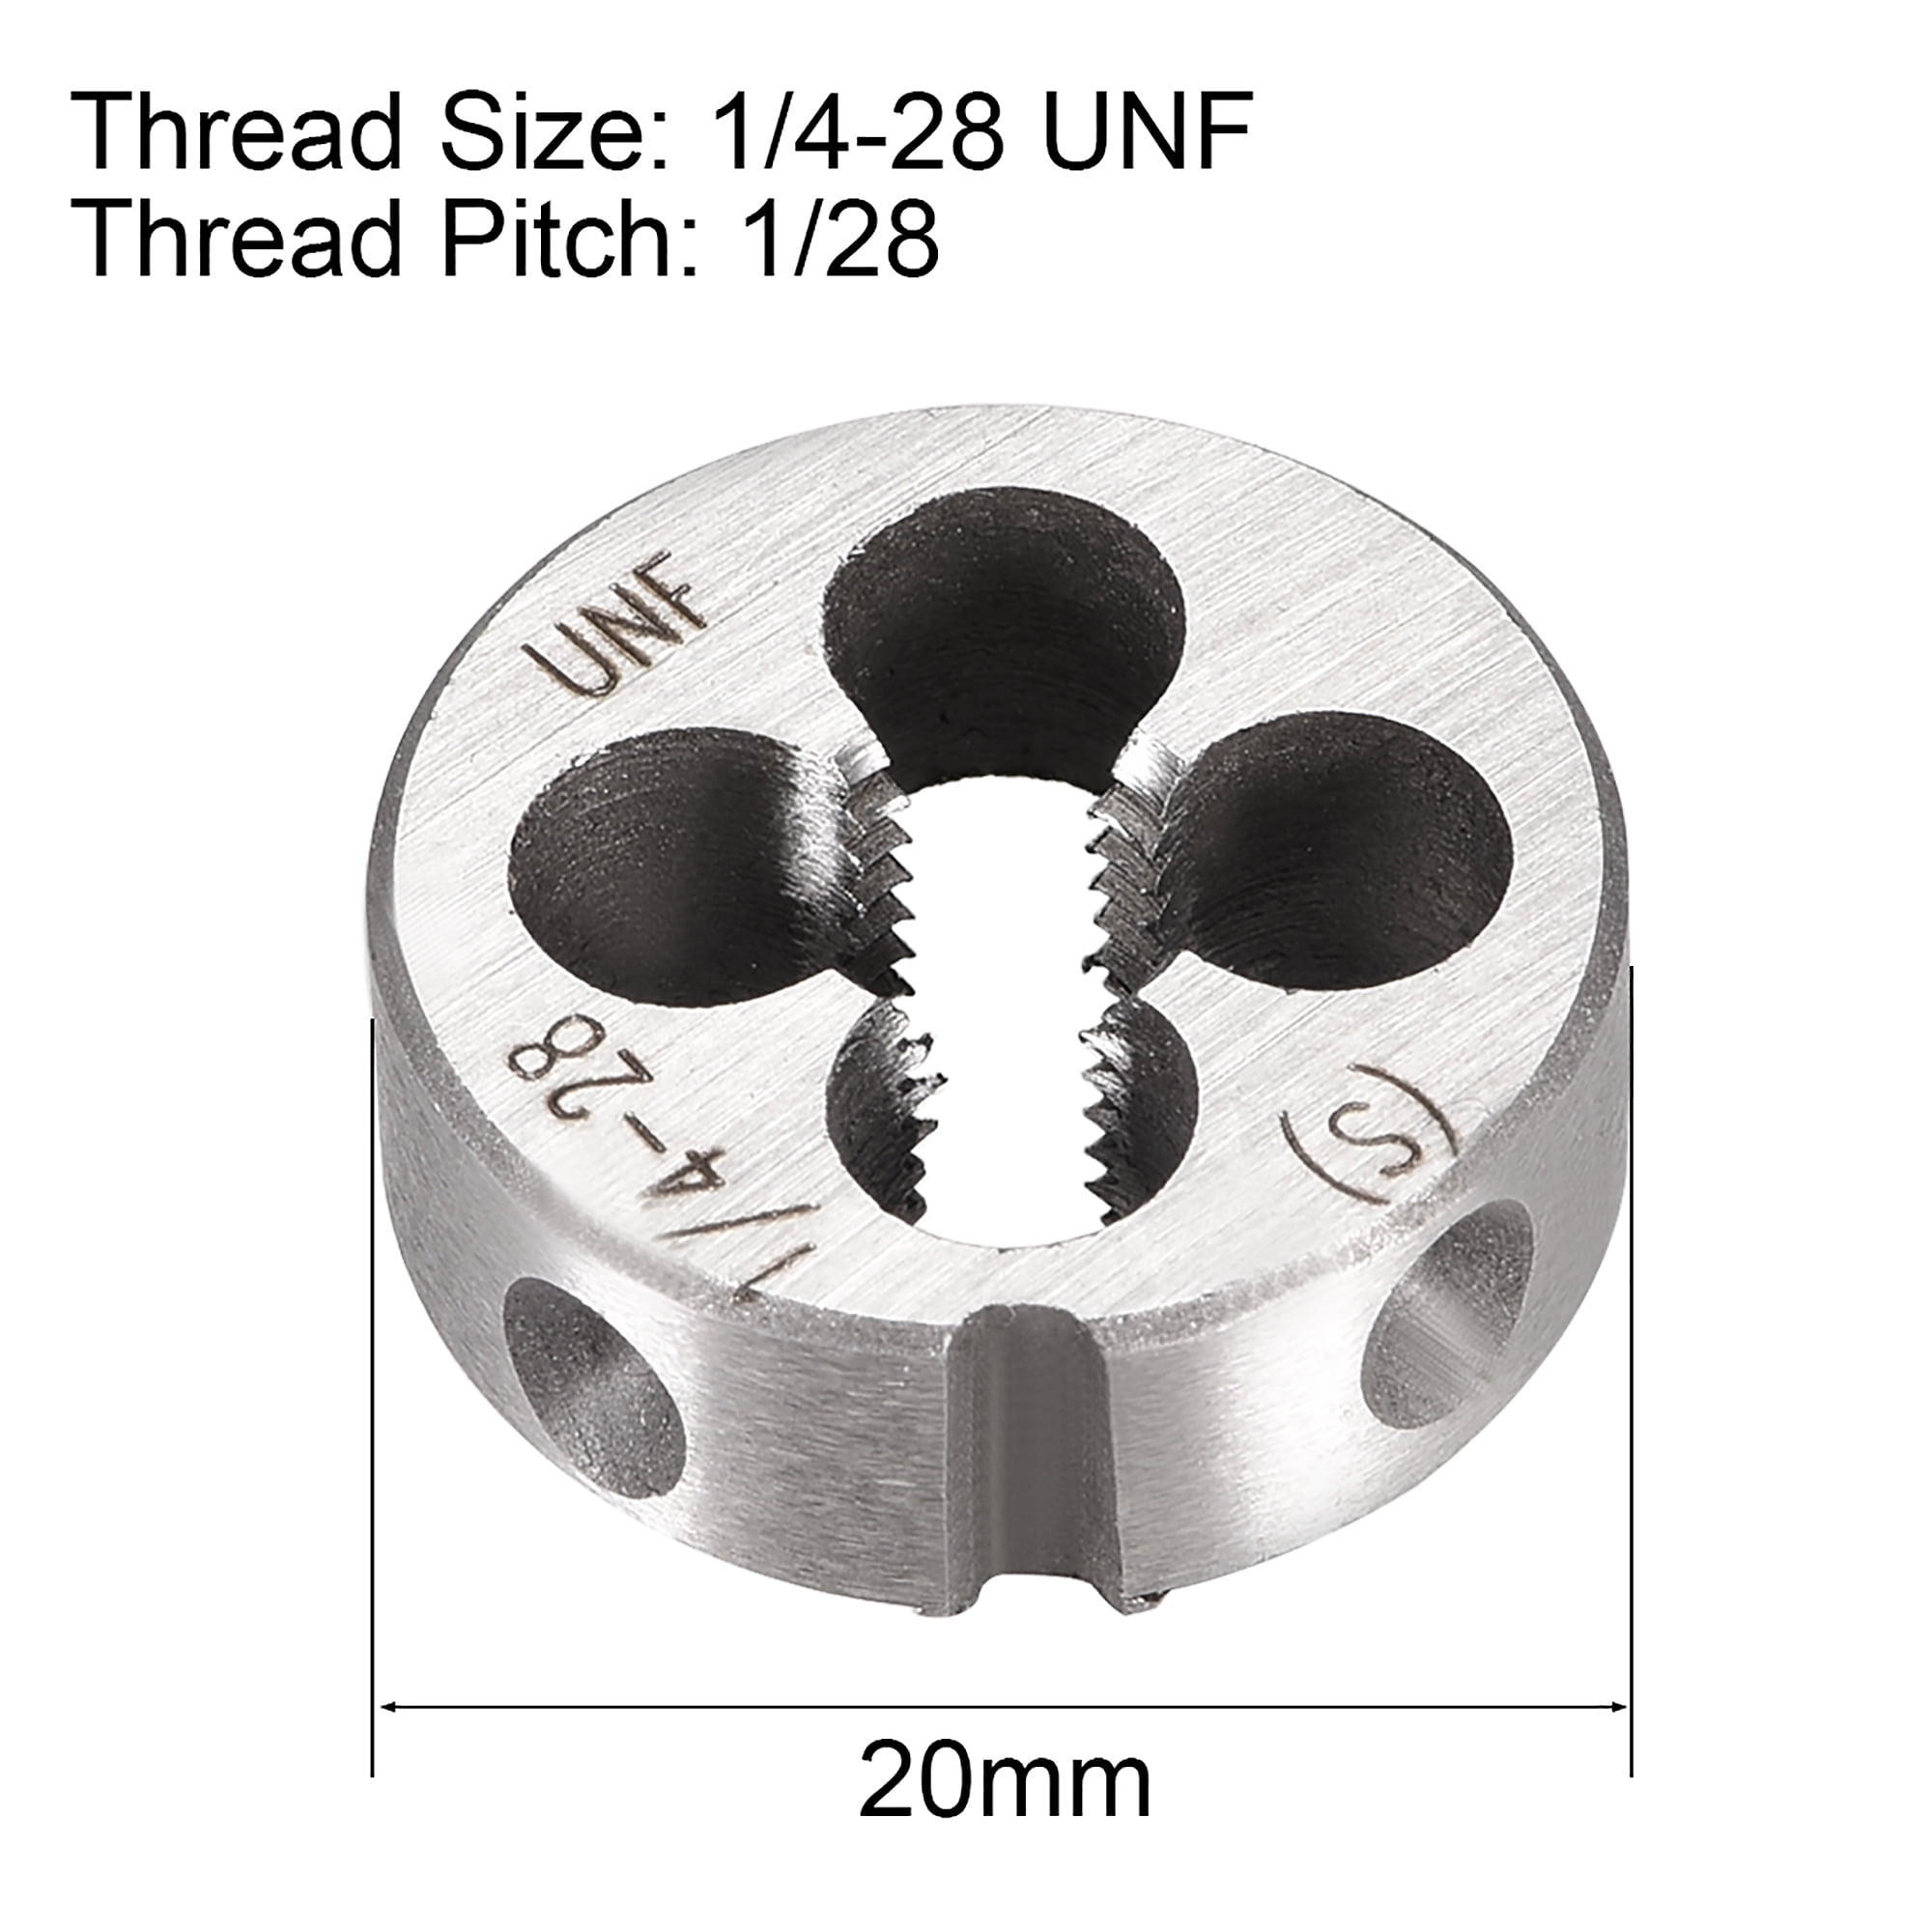 Details about   1/2-28 UNEF Round Dies Machine Thread Threading Dies 1.5" OD Tool Steel 2pcs 